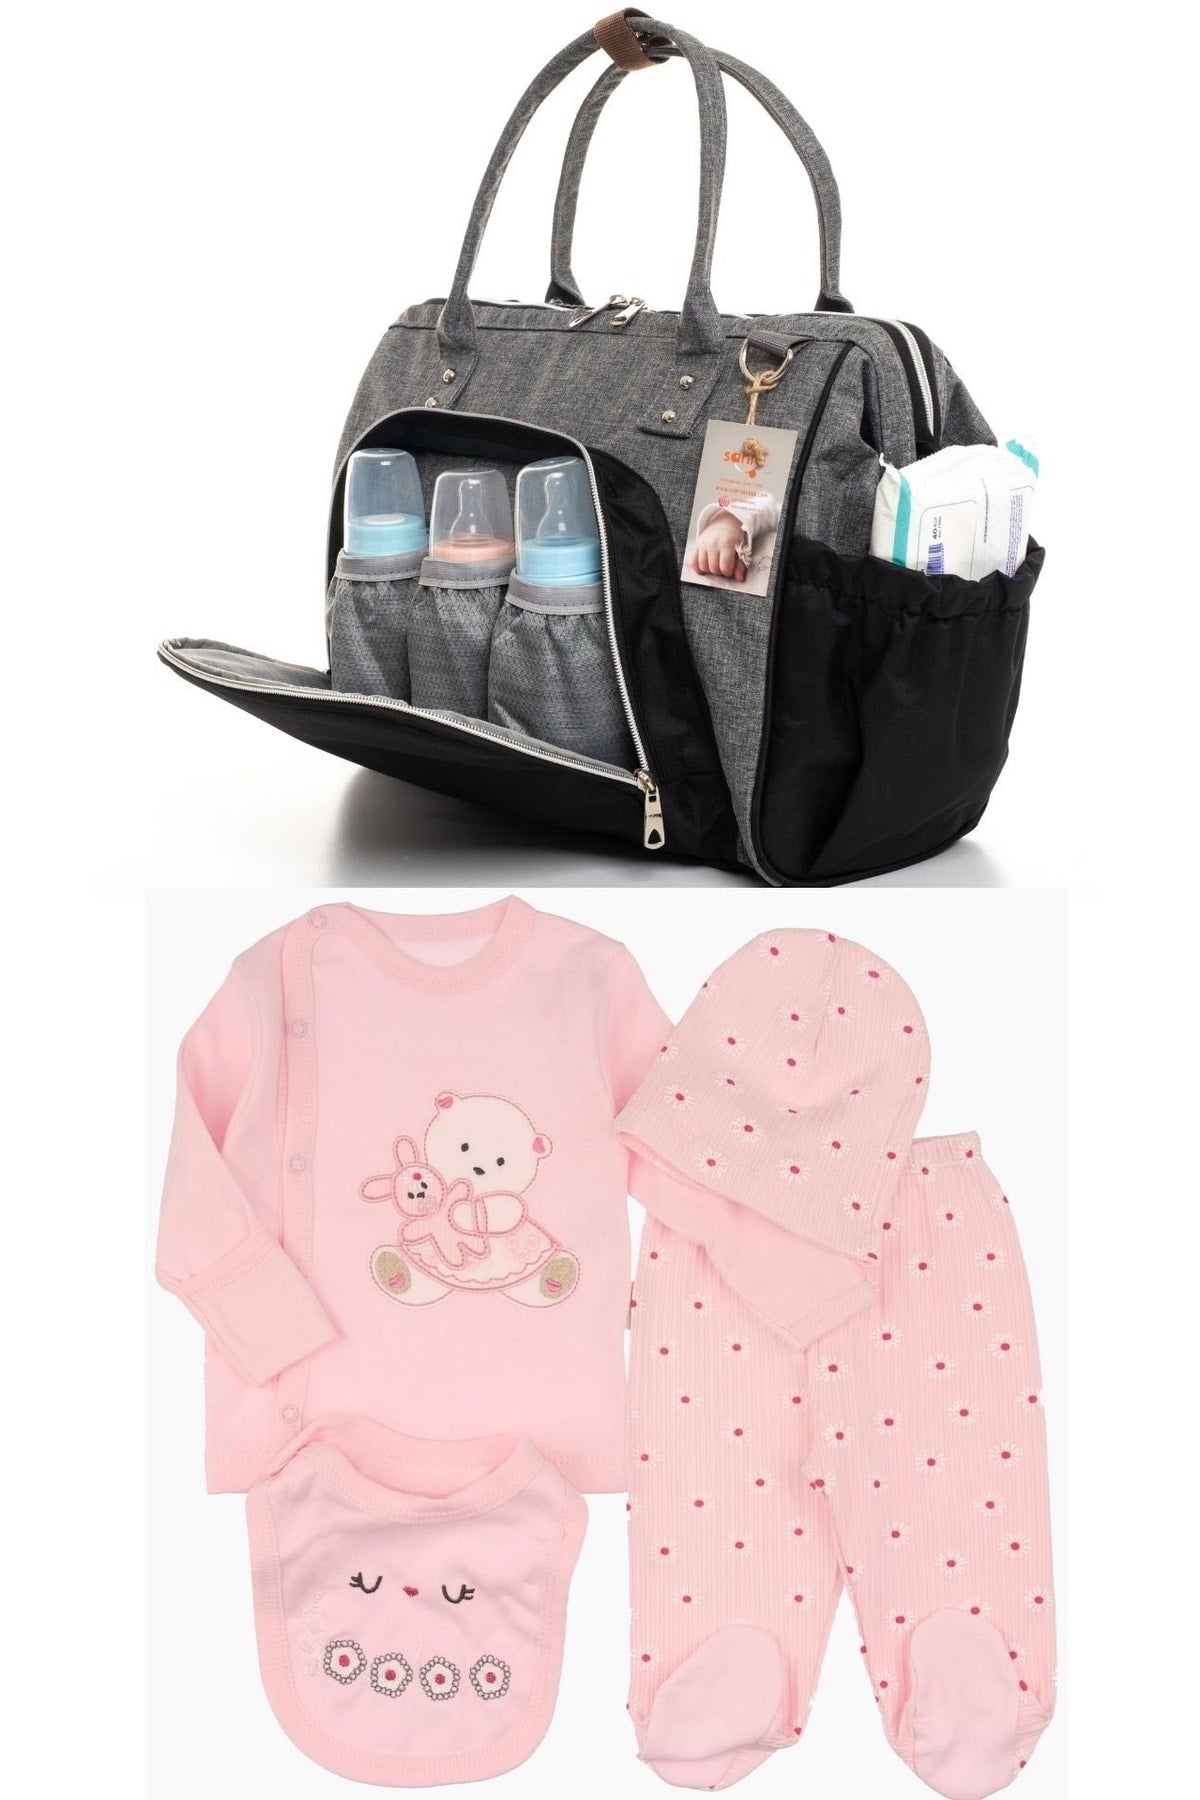 Elegance Mother Baby Care Shoulder-Handbag And 100% Cotton Hospital Outlet Set